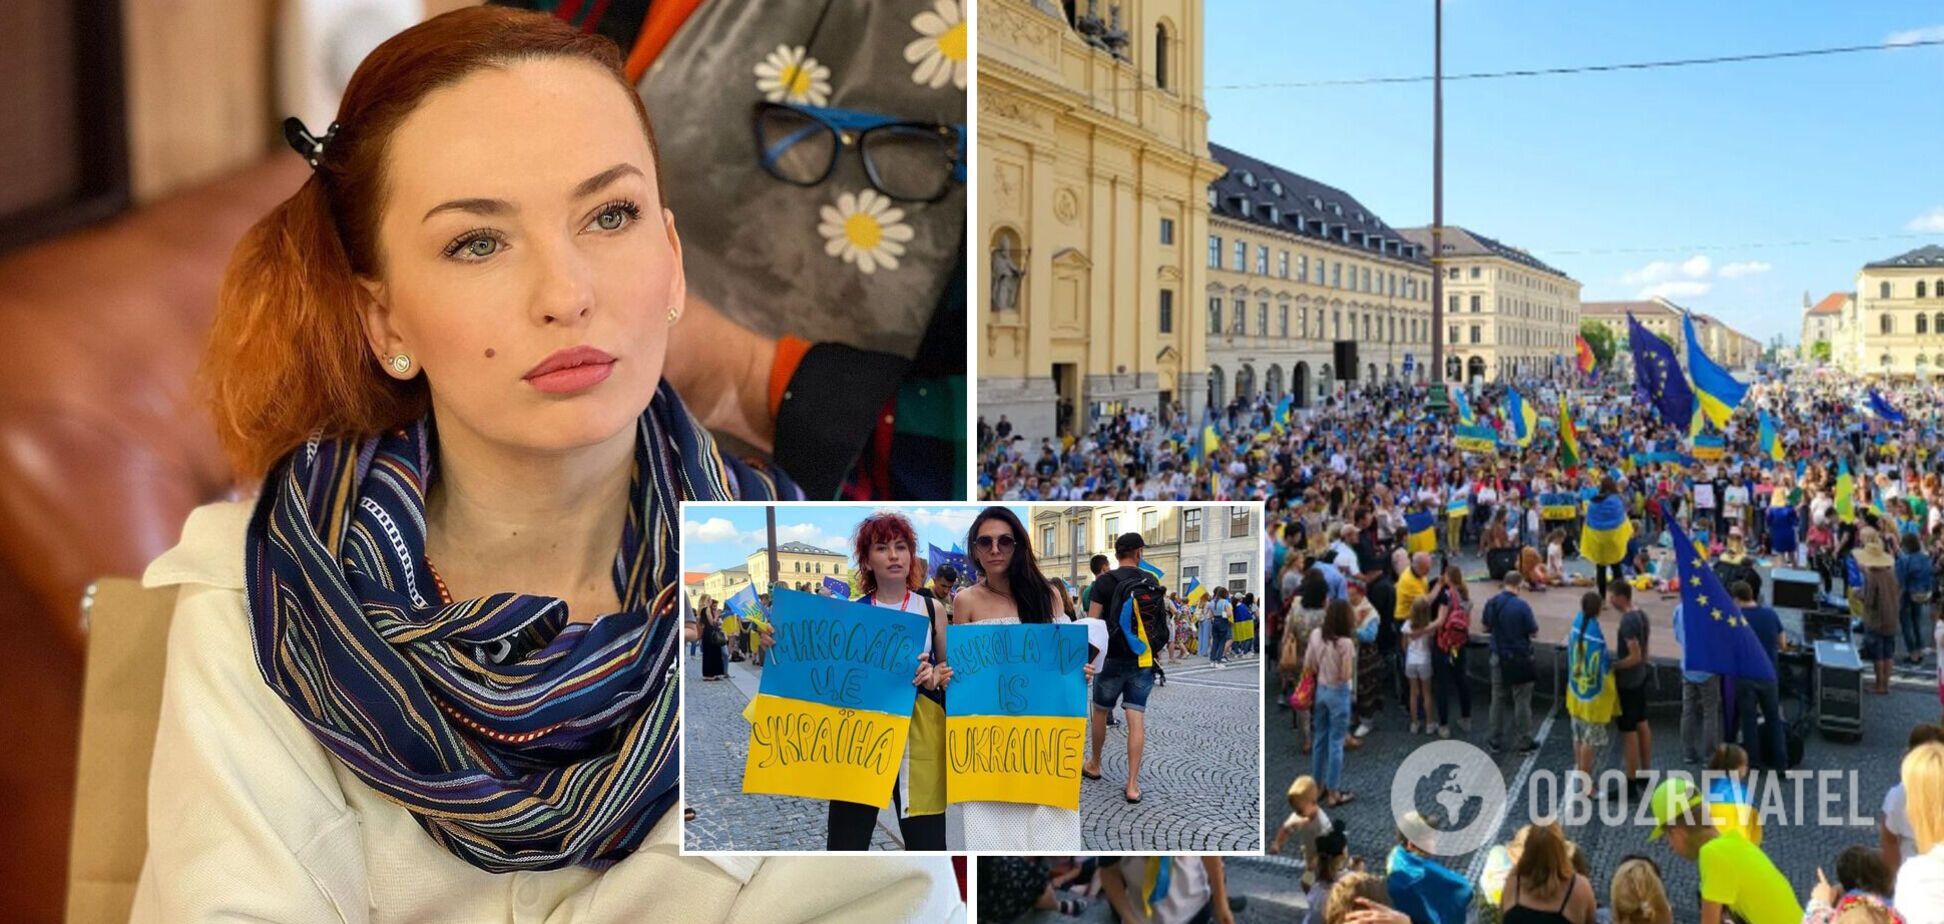 Булитко из 'Дизель Шоу' рассказала о встрече с незнакомой украинкой в Мюнхене: мы плакали, было ощущение, что мы одно целое